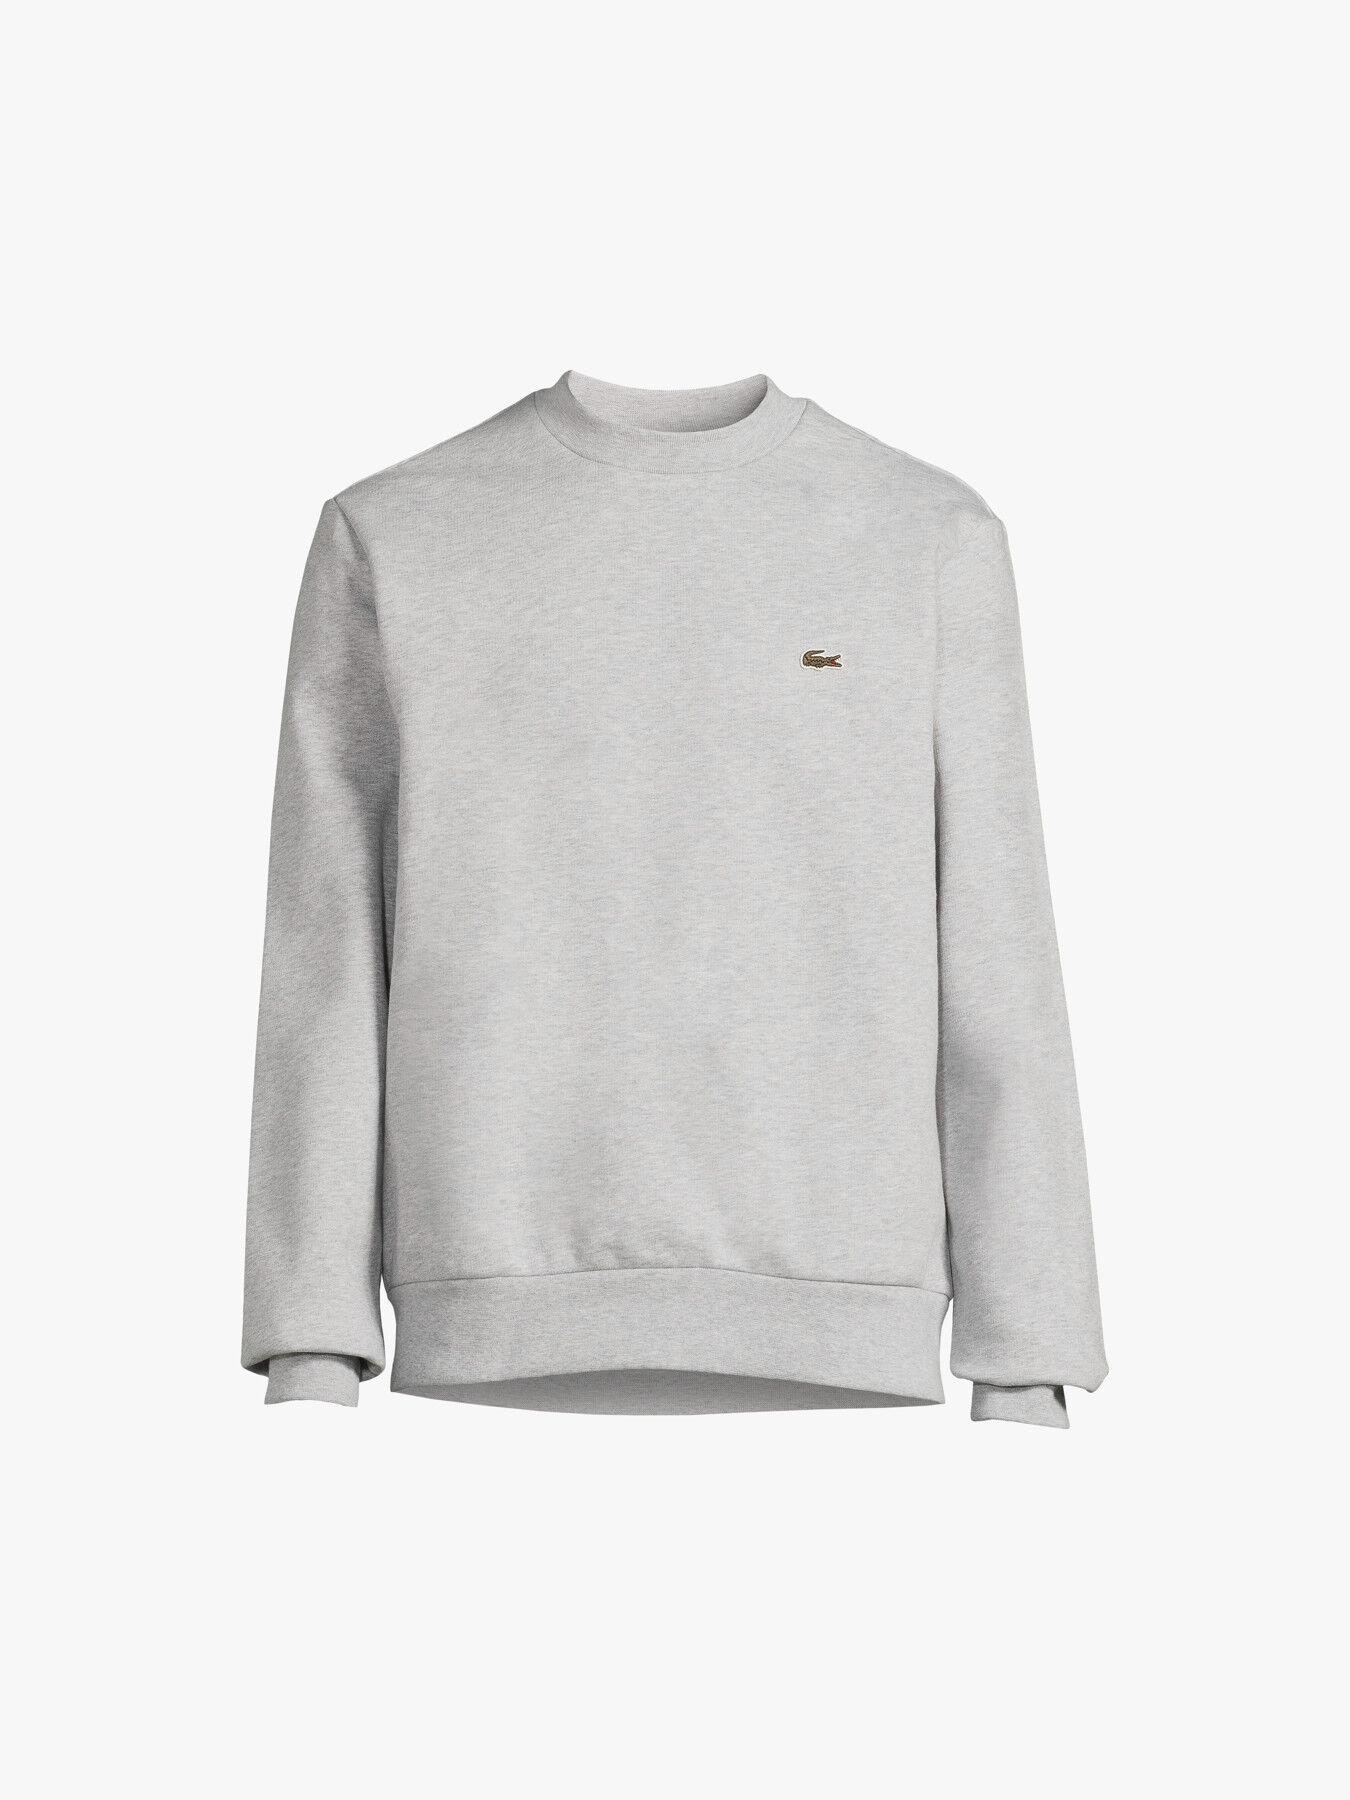 imporio 11 Men Classic Plain Crew Neck Fleece Sweatshirt Mens Casual Sweatshirt Jumper Top UK Size S-XL 